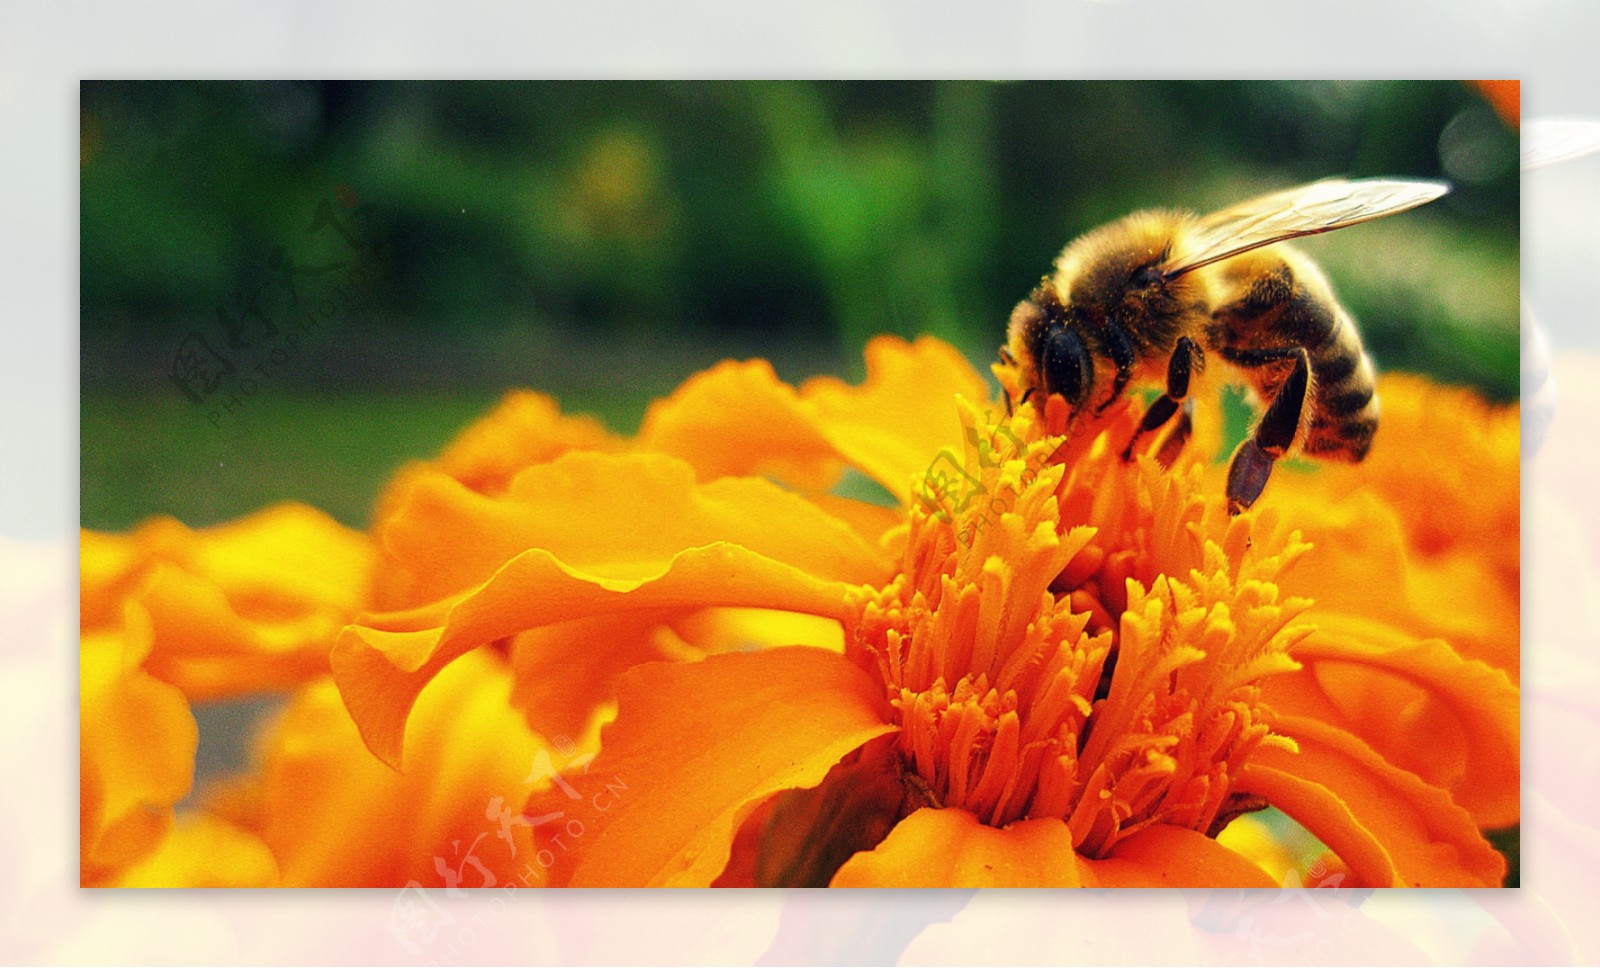 橙色花朵上的蜜蜂